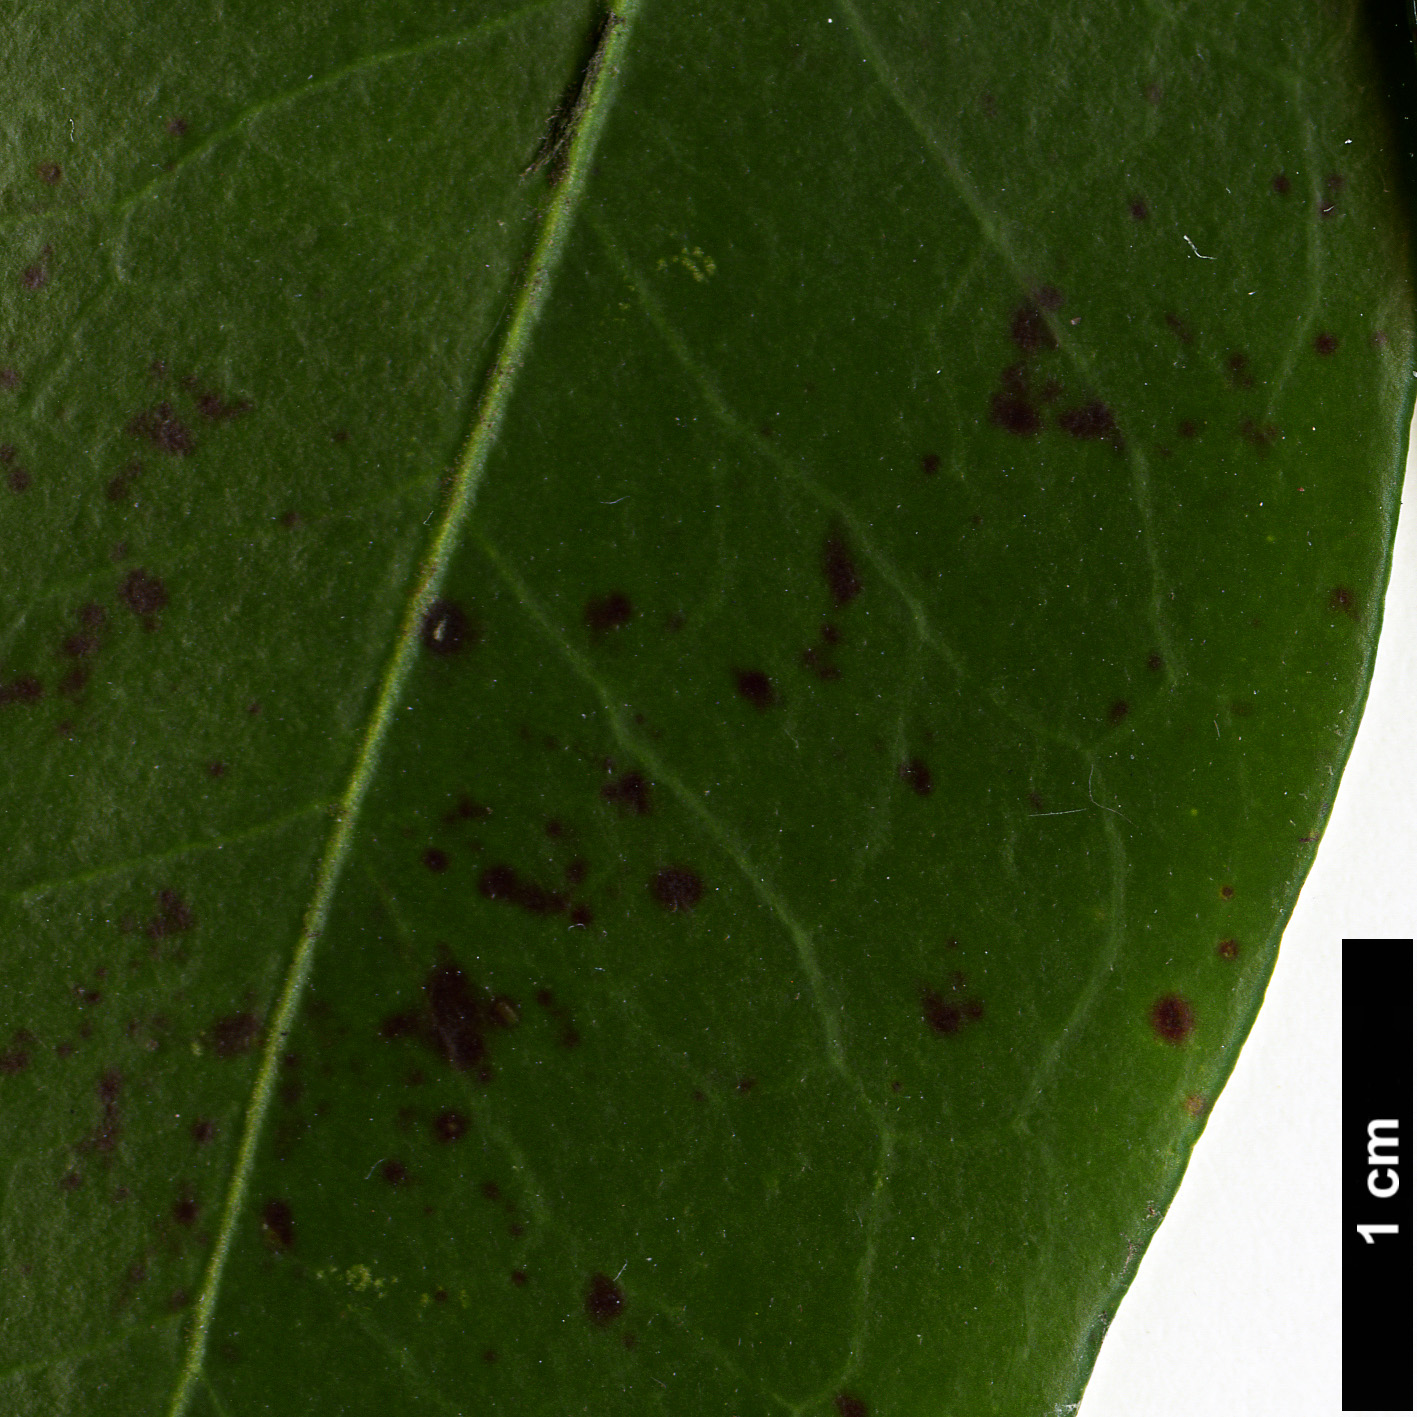 High resolution image: Family: Ericaceae - Genus: Kalmia - Taxon: latifolia